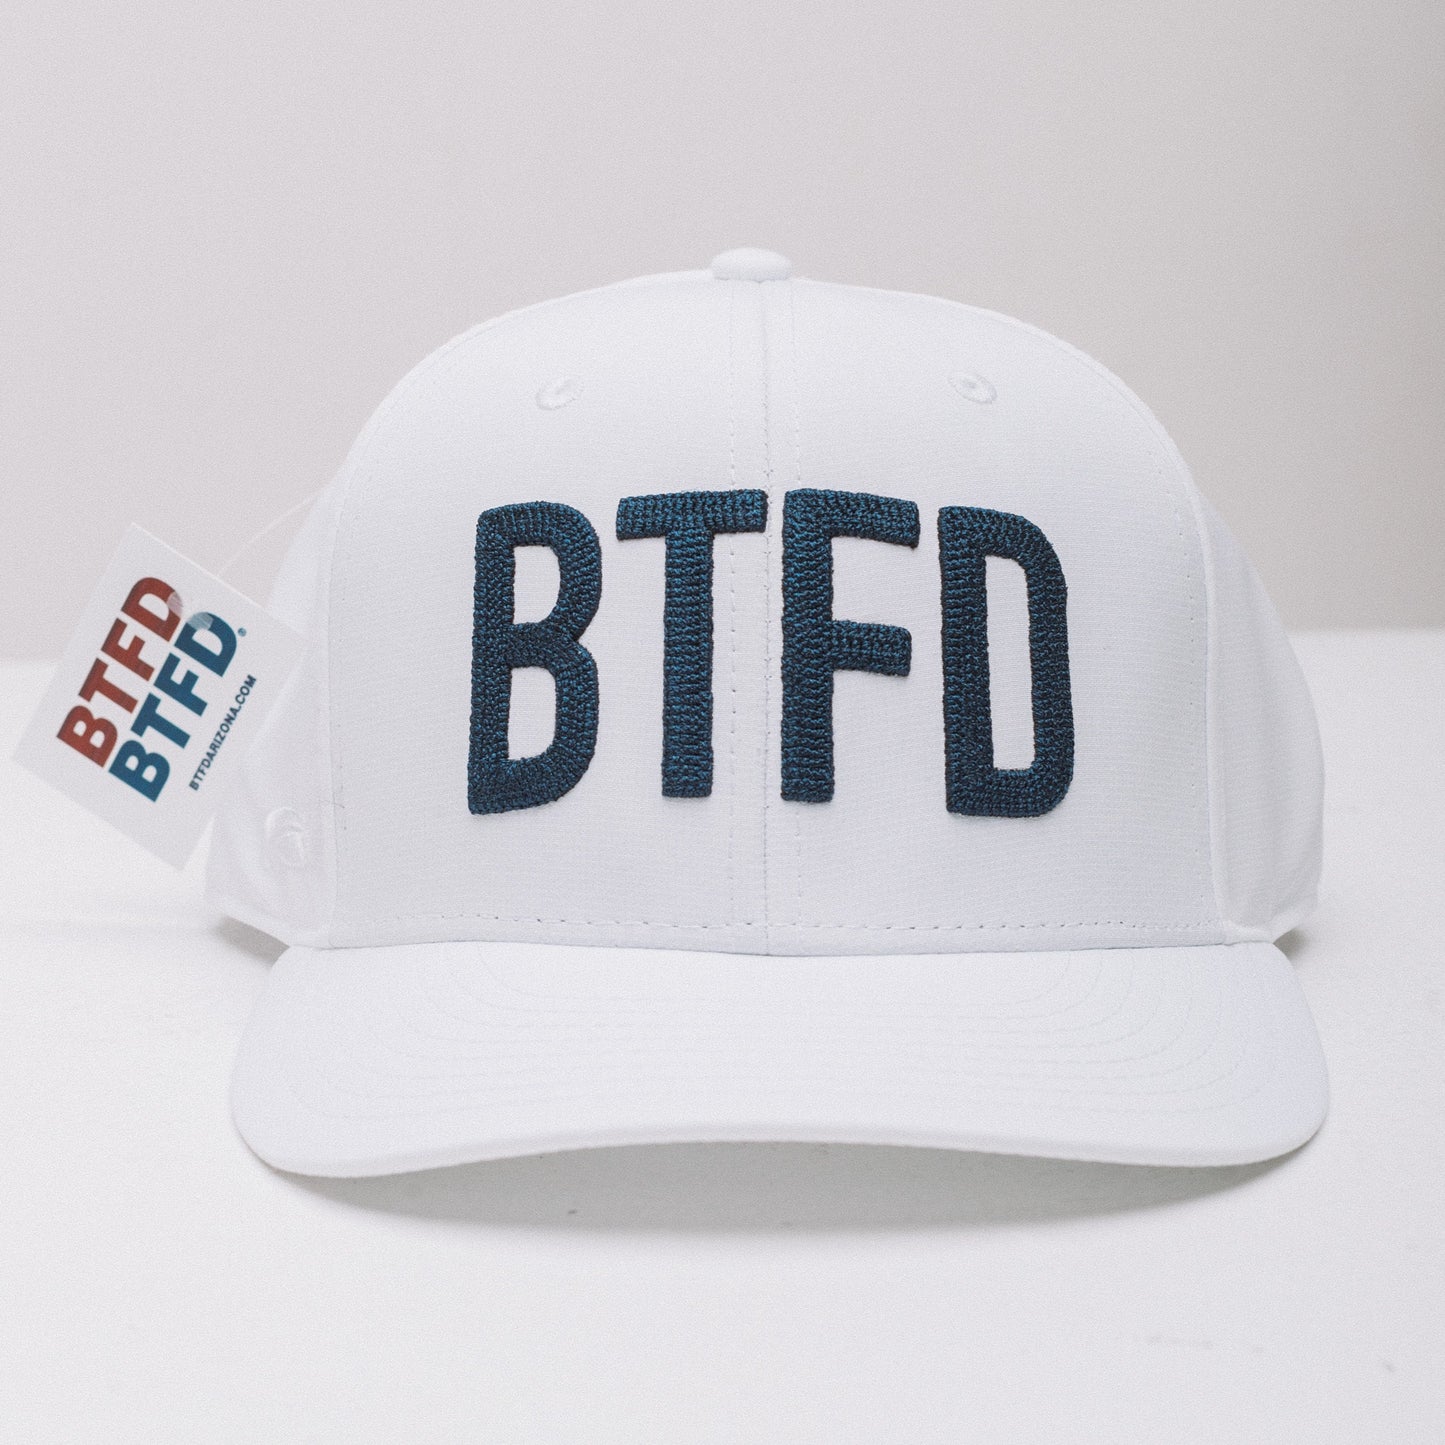 BTFD Fashion Snapback